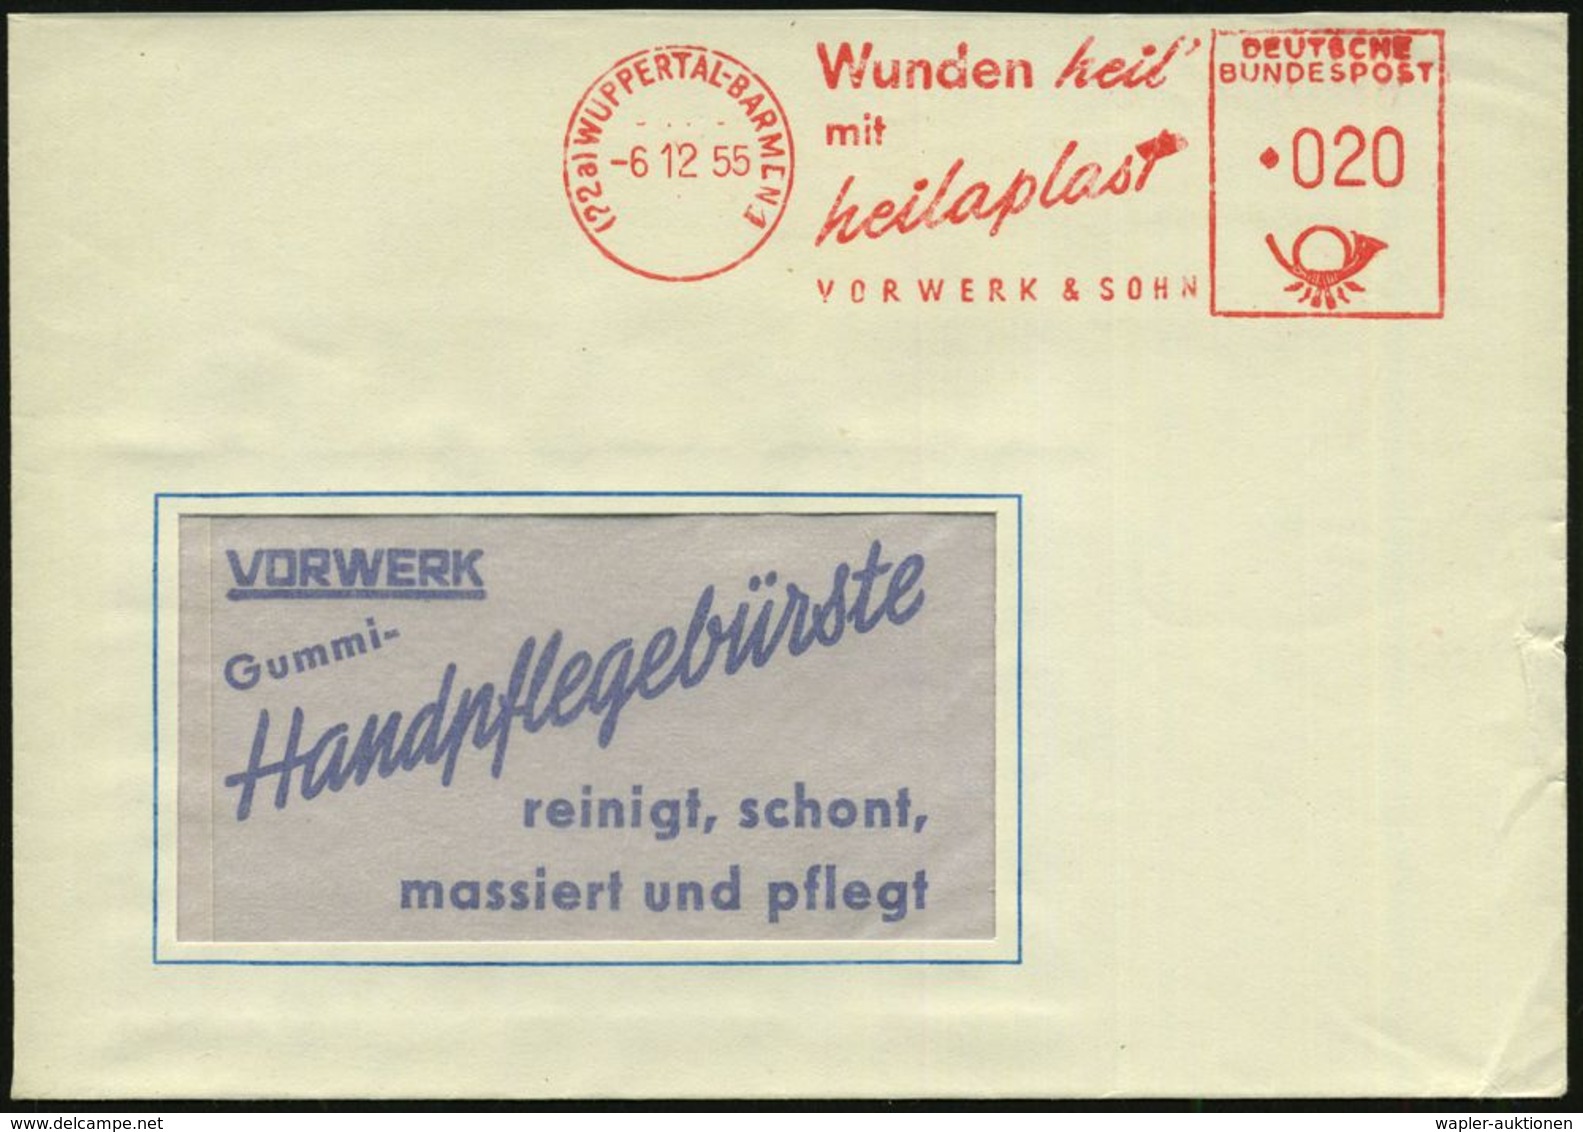 BLUT / HÄMATOLOGIE / BLUTSPENDEN : (22a) WUPPERTAL-BARMEN 1/ Wunden Heil'/ Mit/ Heilaplast/ VORWERK & SOHN 1955 (6.12.)  - Krankheiten